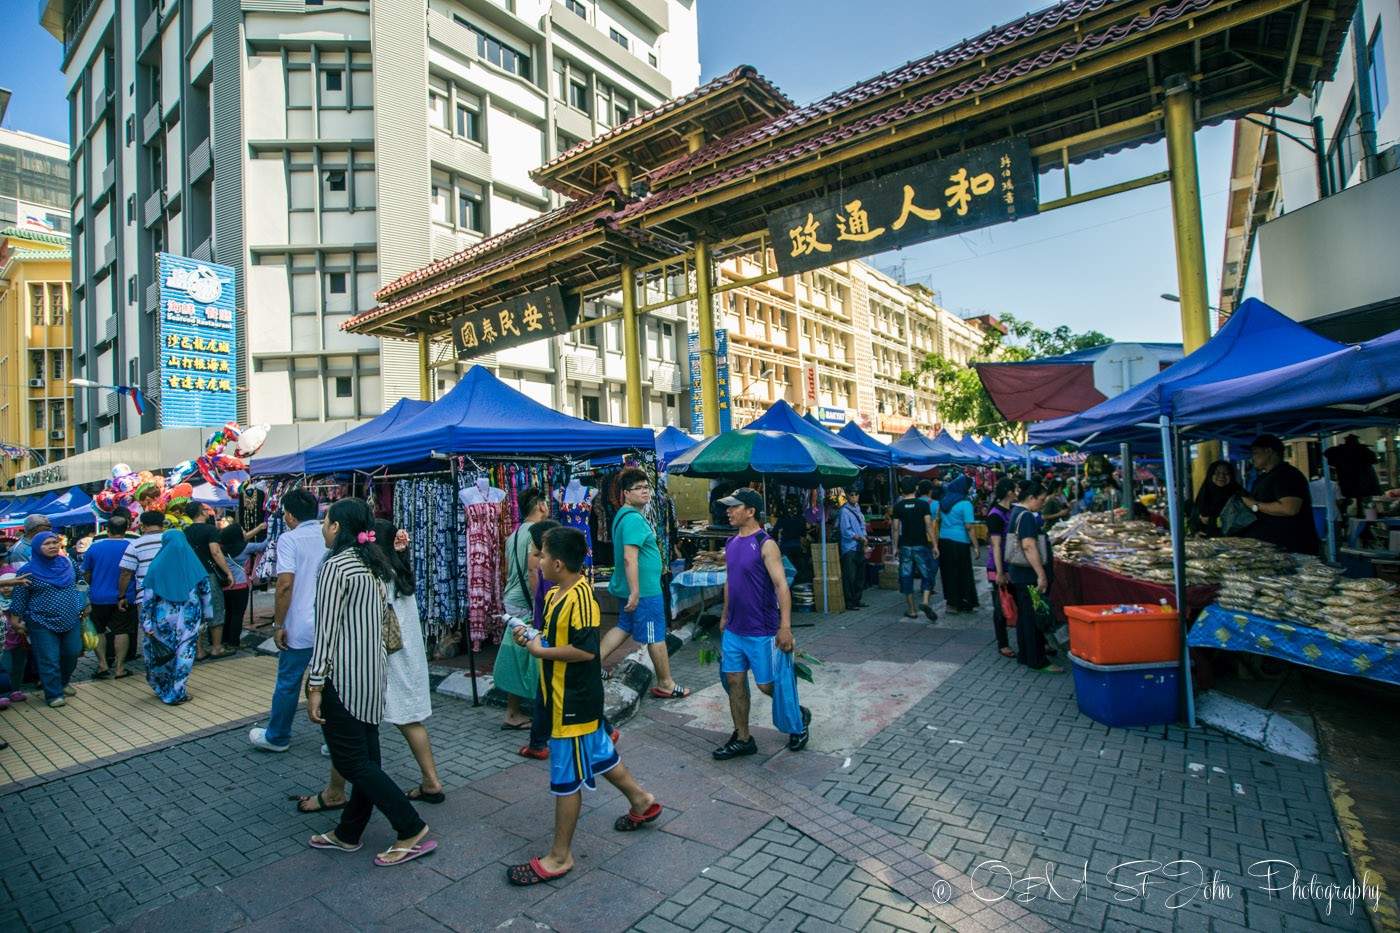 Gaya Street Sunday Market, Kota Kinabalu. Sabah. Malaysia